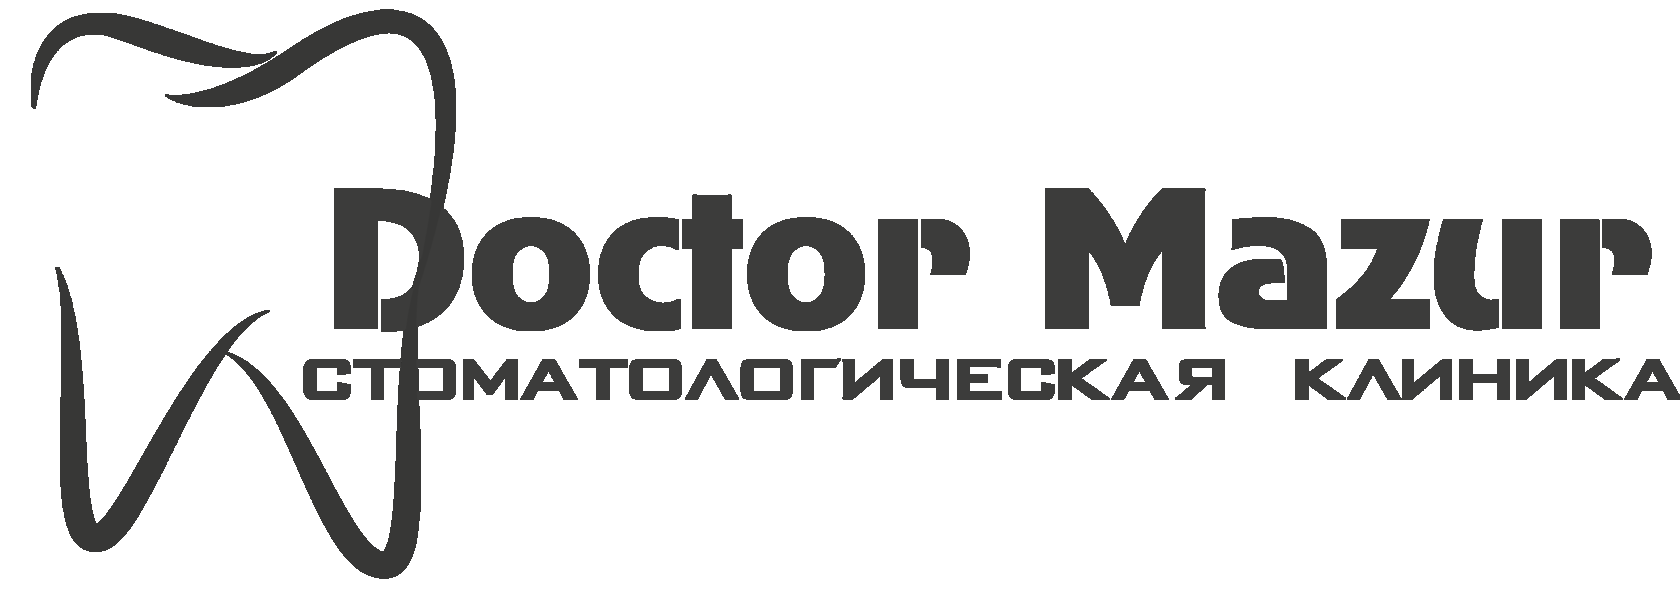 Doctor Mazur